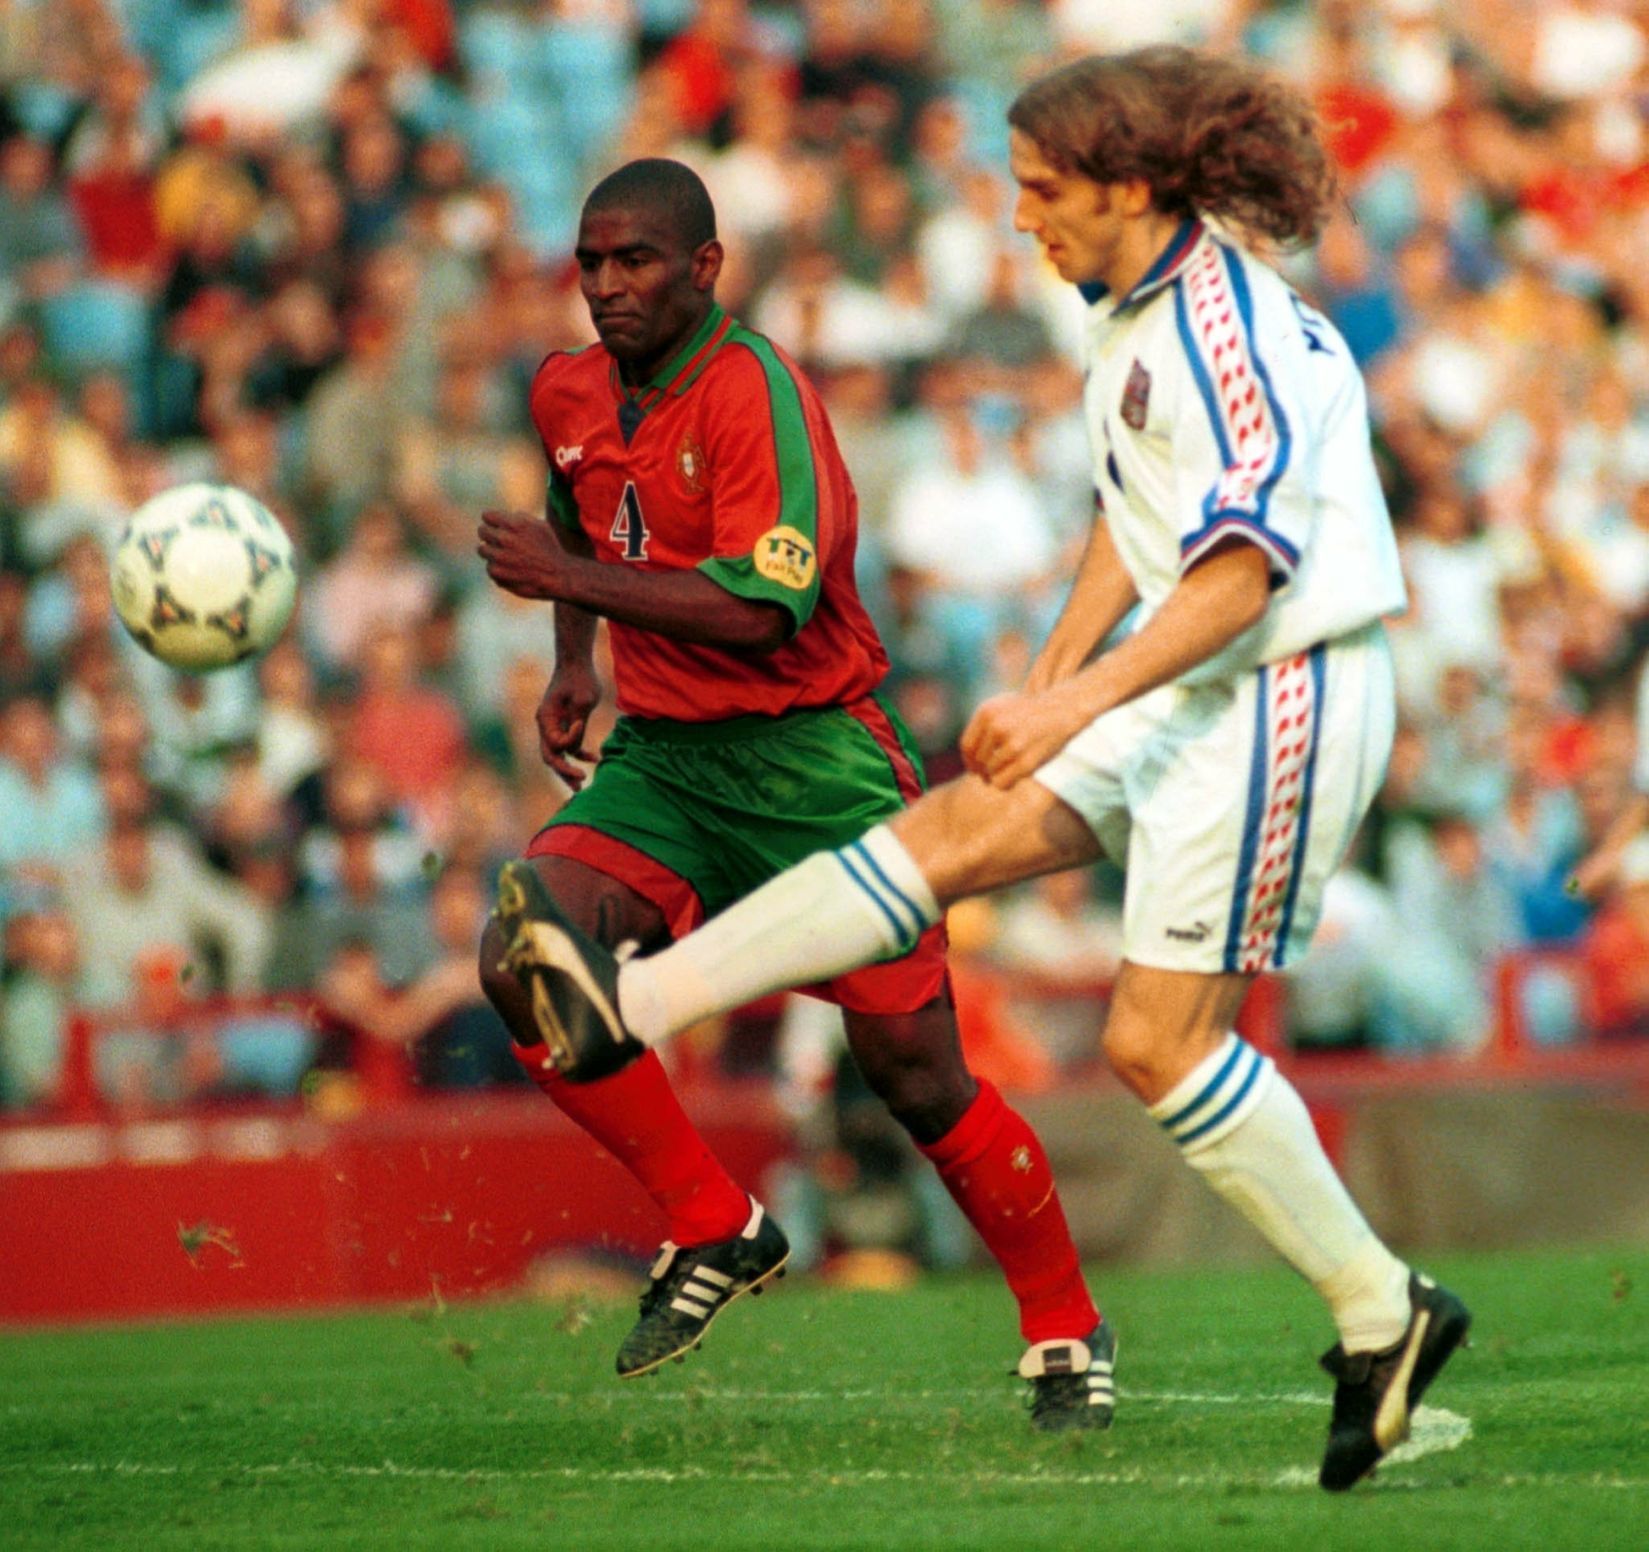 fotbal, ME 1996, čtvrtfinále, Česko - Portugalsko, Karel Poborský